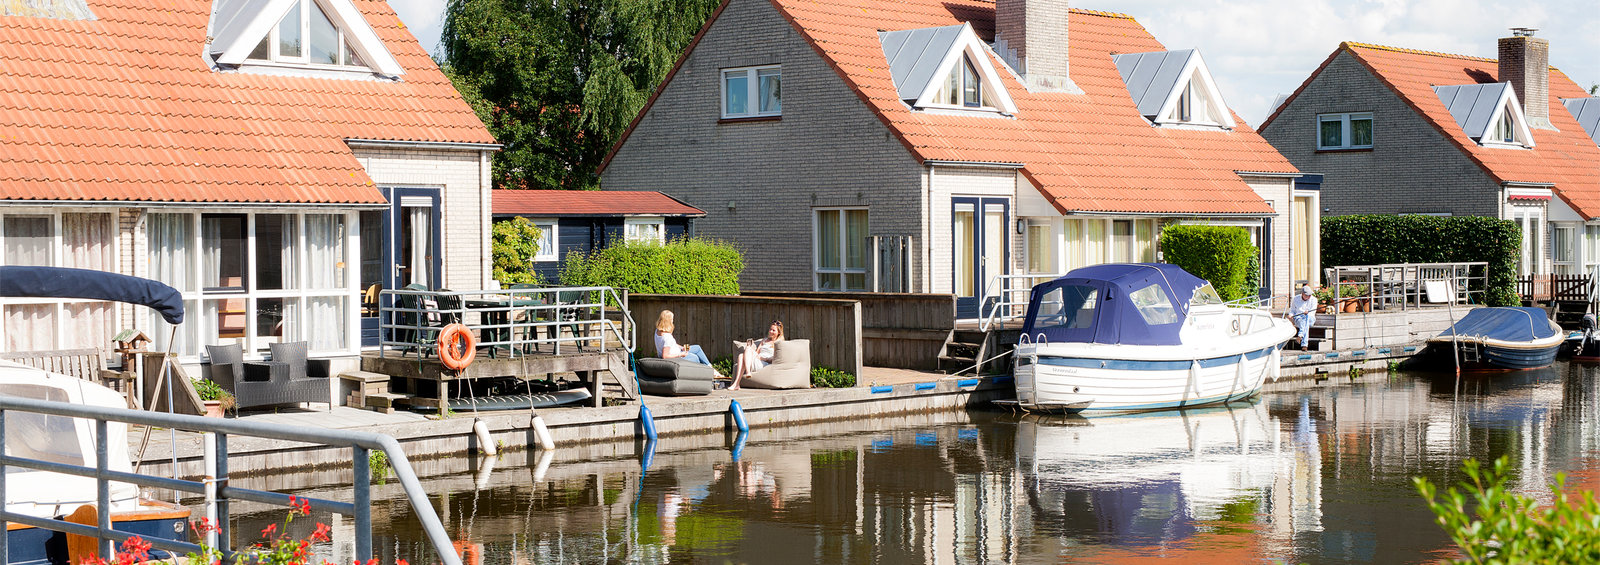 Ferienhaus mit Boot in Holland